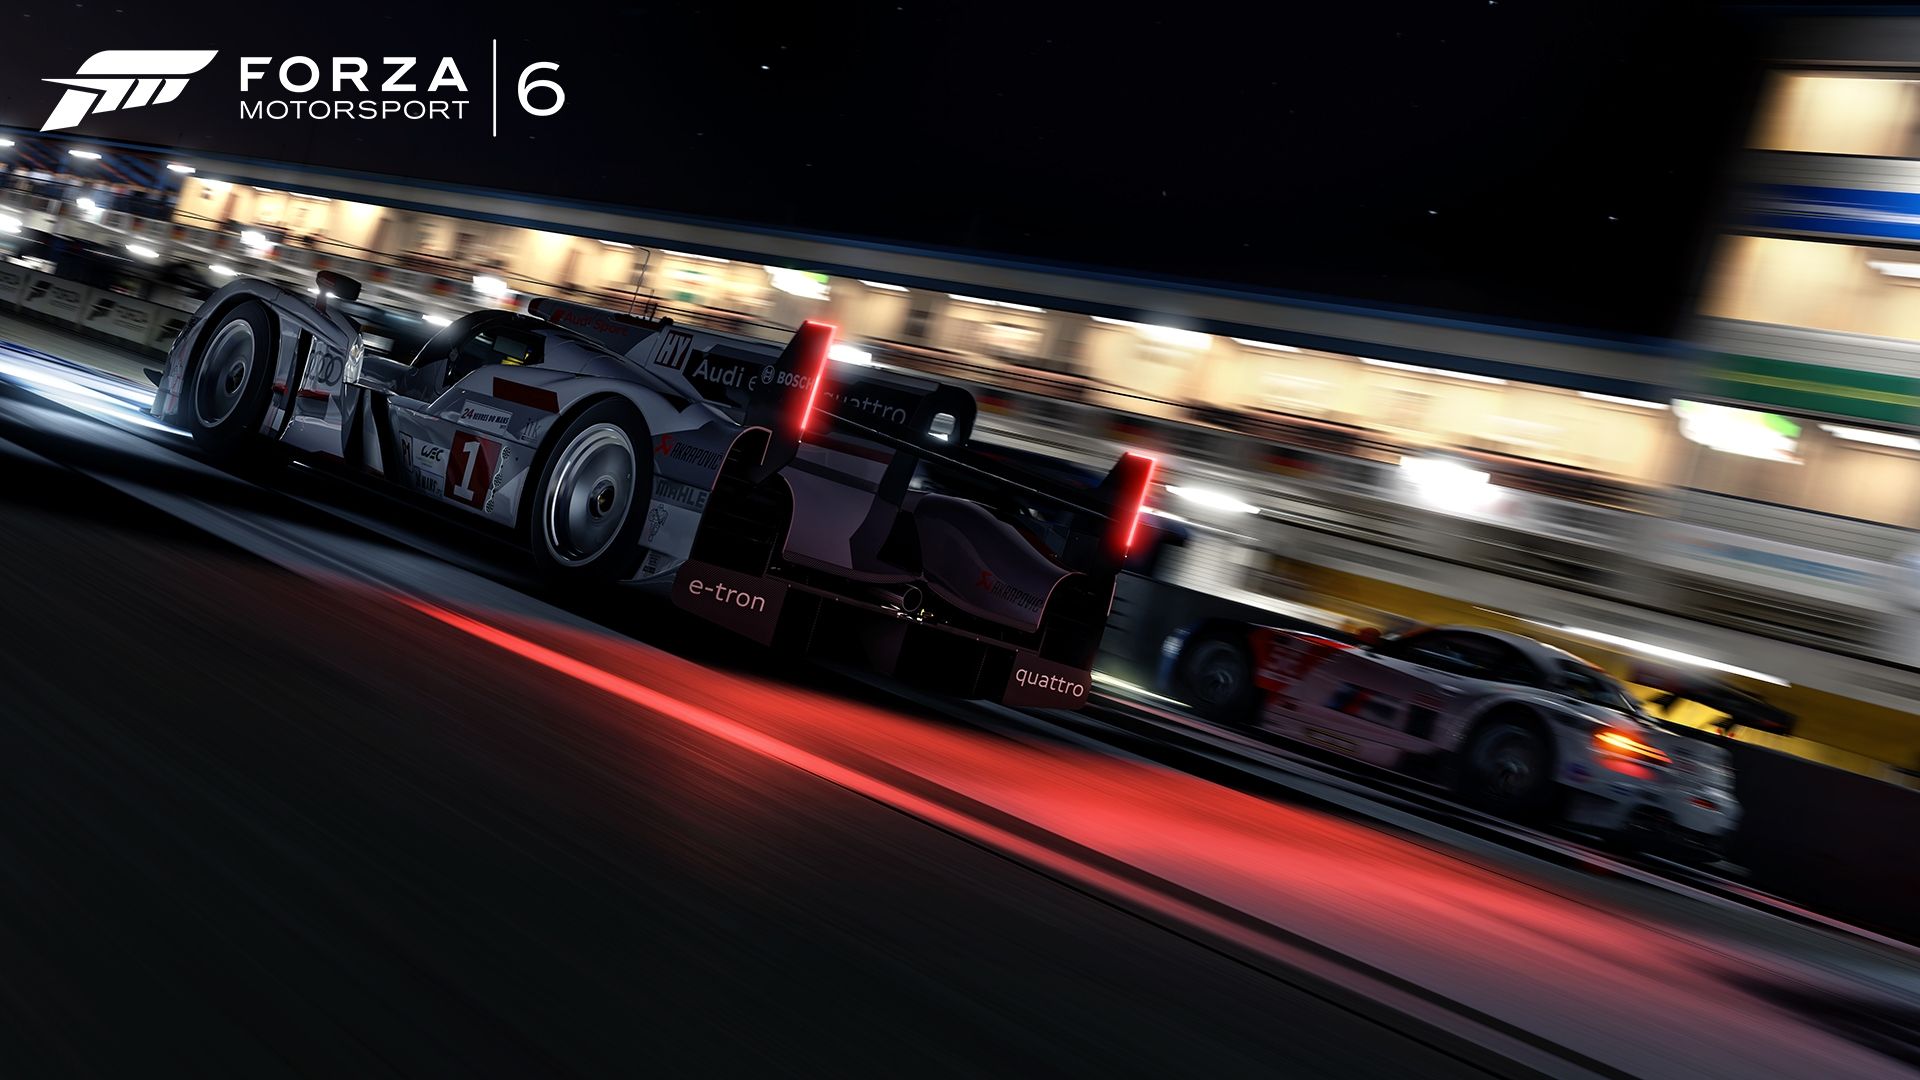 [Rumor] Arriva il rally all'interno di Forza Motorsport 6?